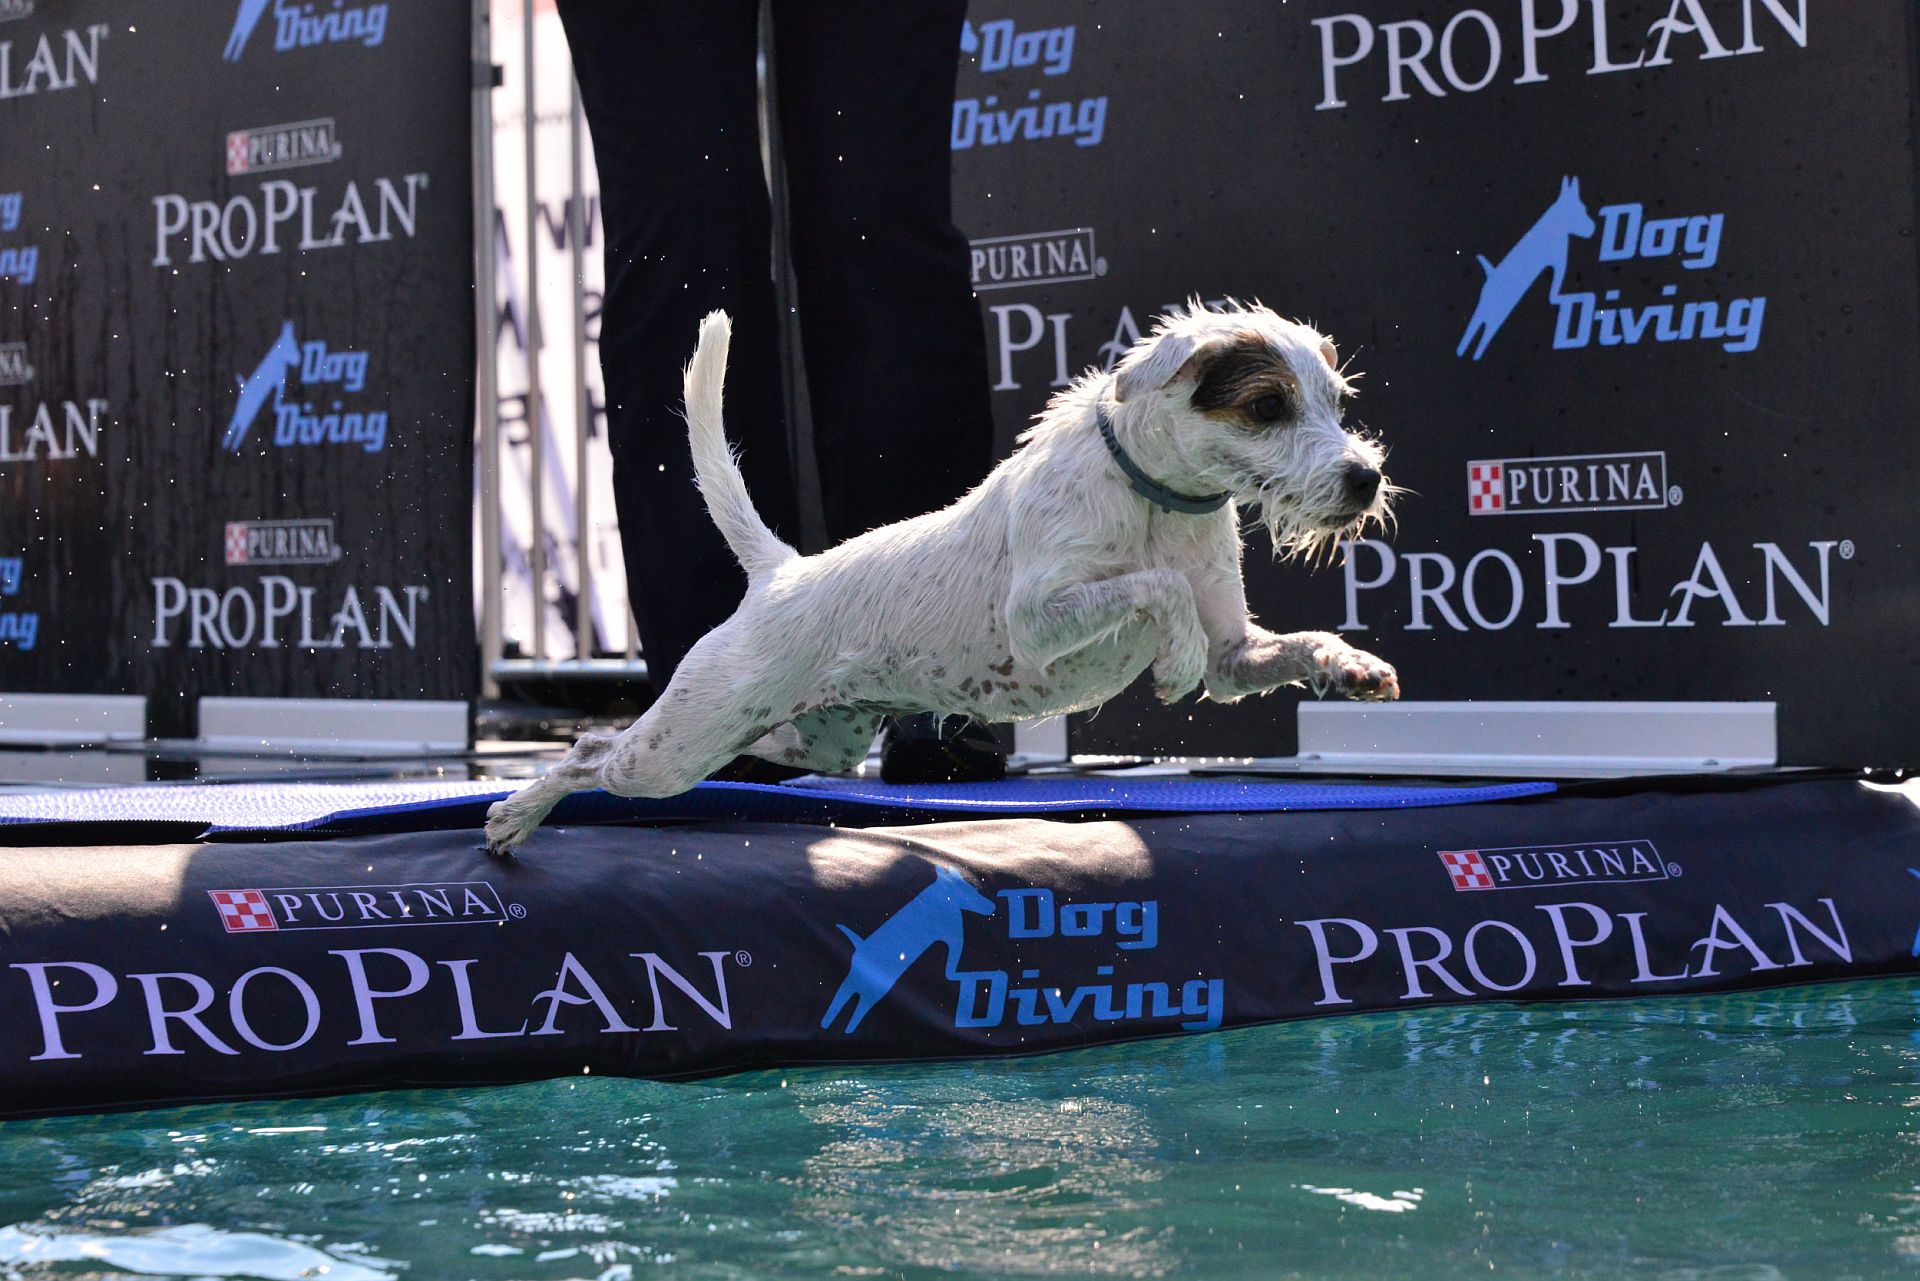 5 Dog Diving ProPlan